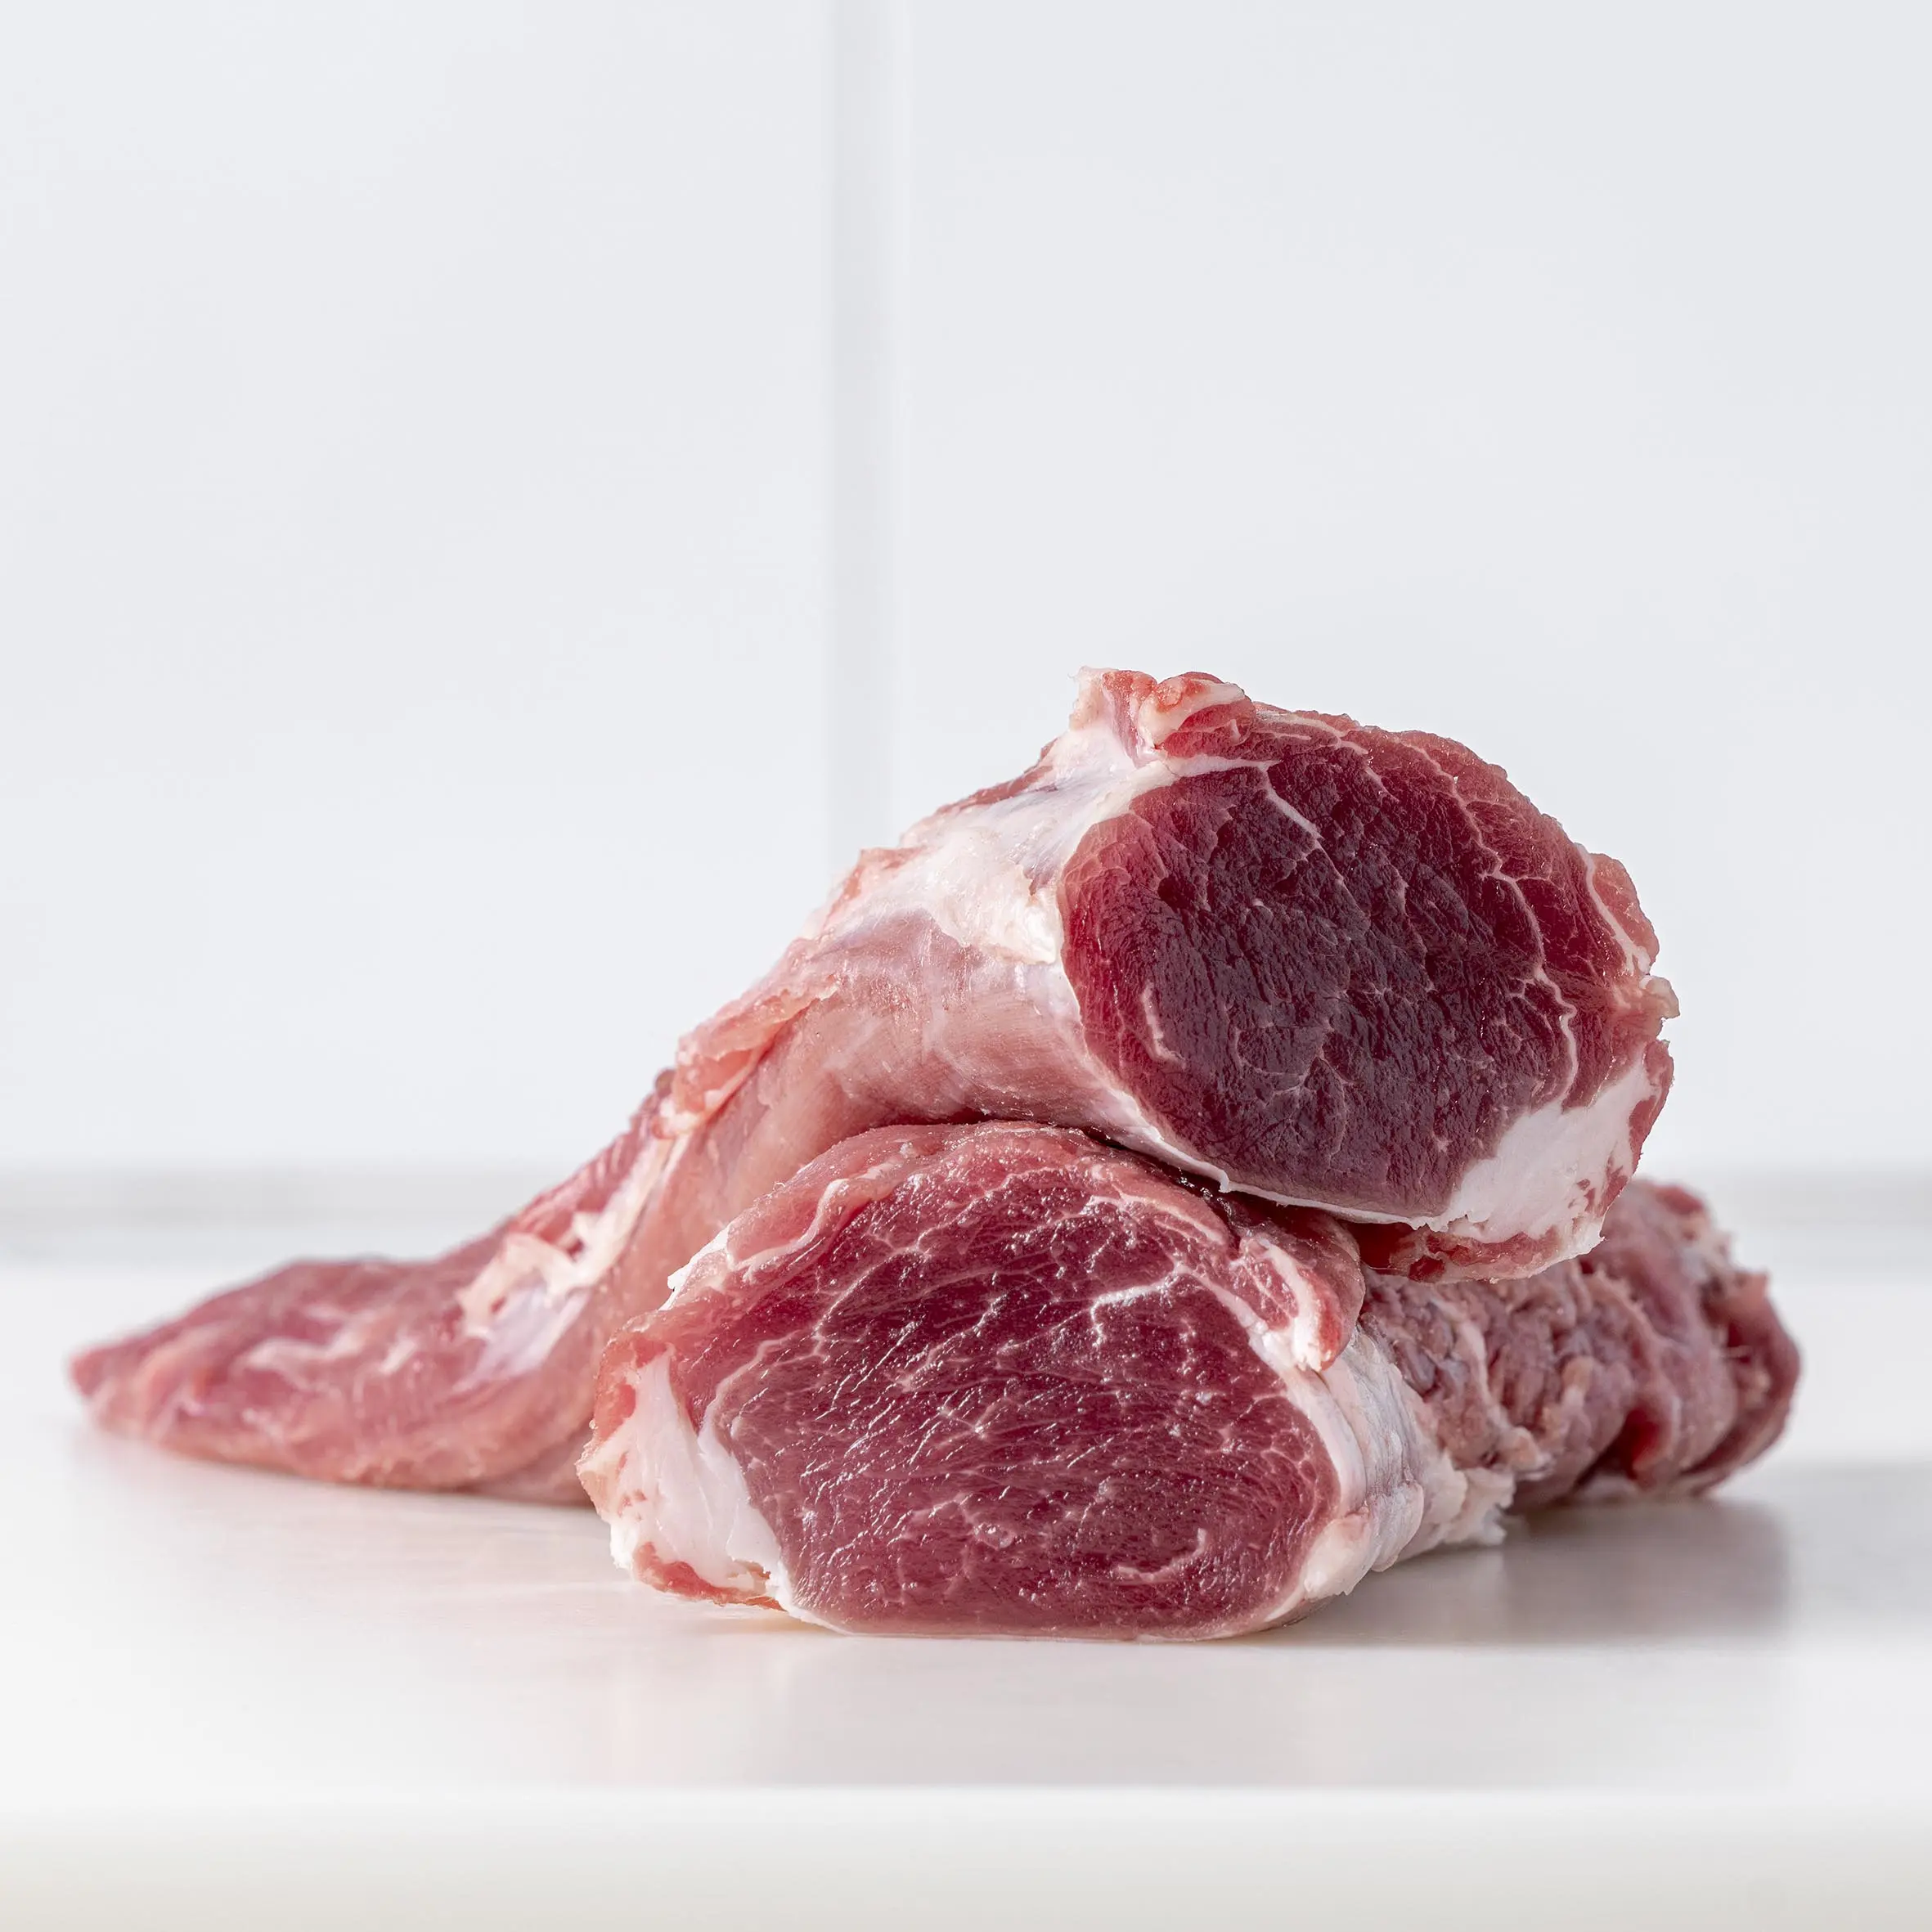 carniceria de cerdo iberico - Cuánto cuesta un kilo de secreto ibérico